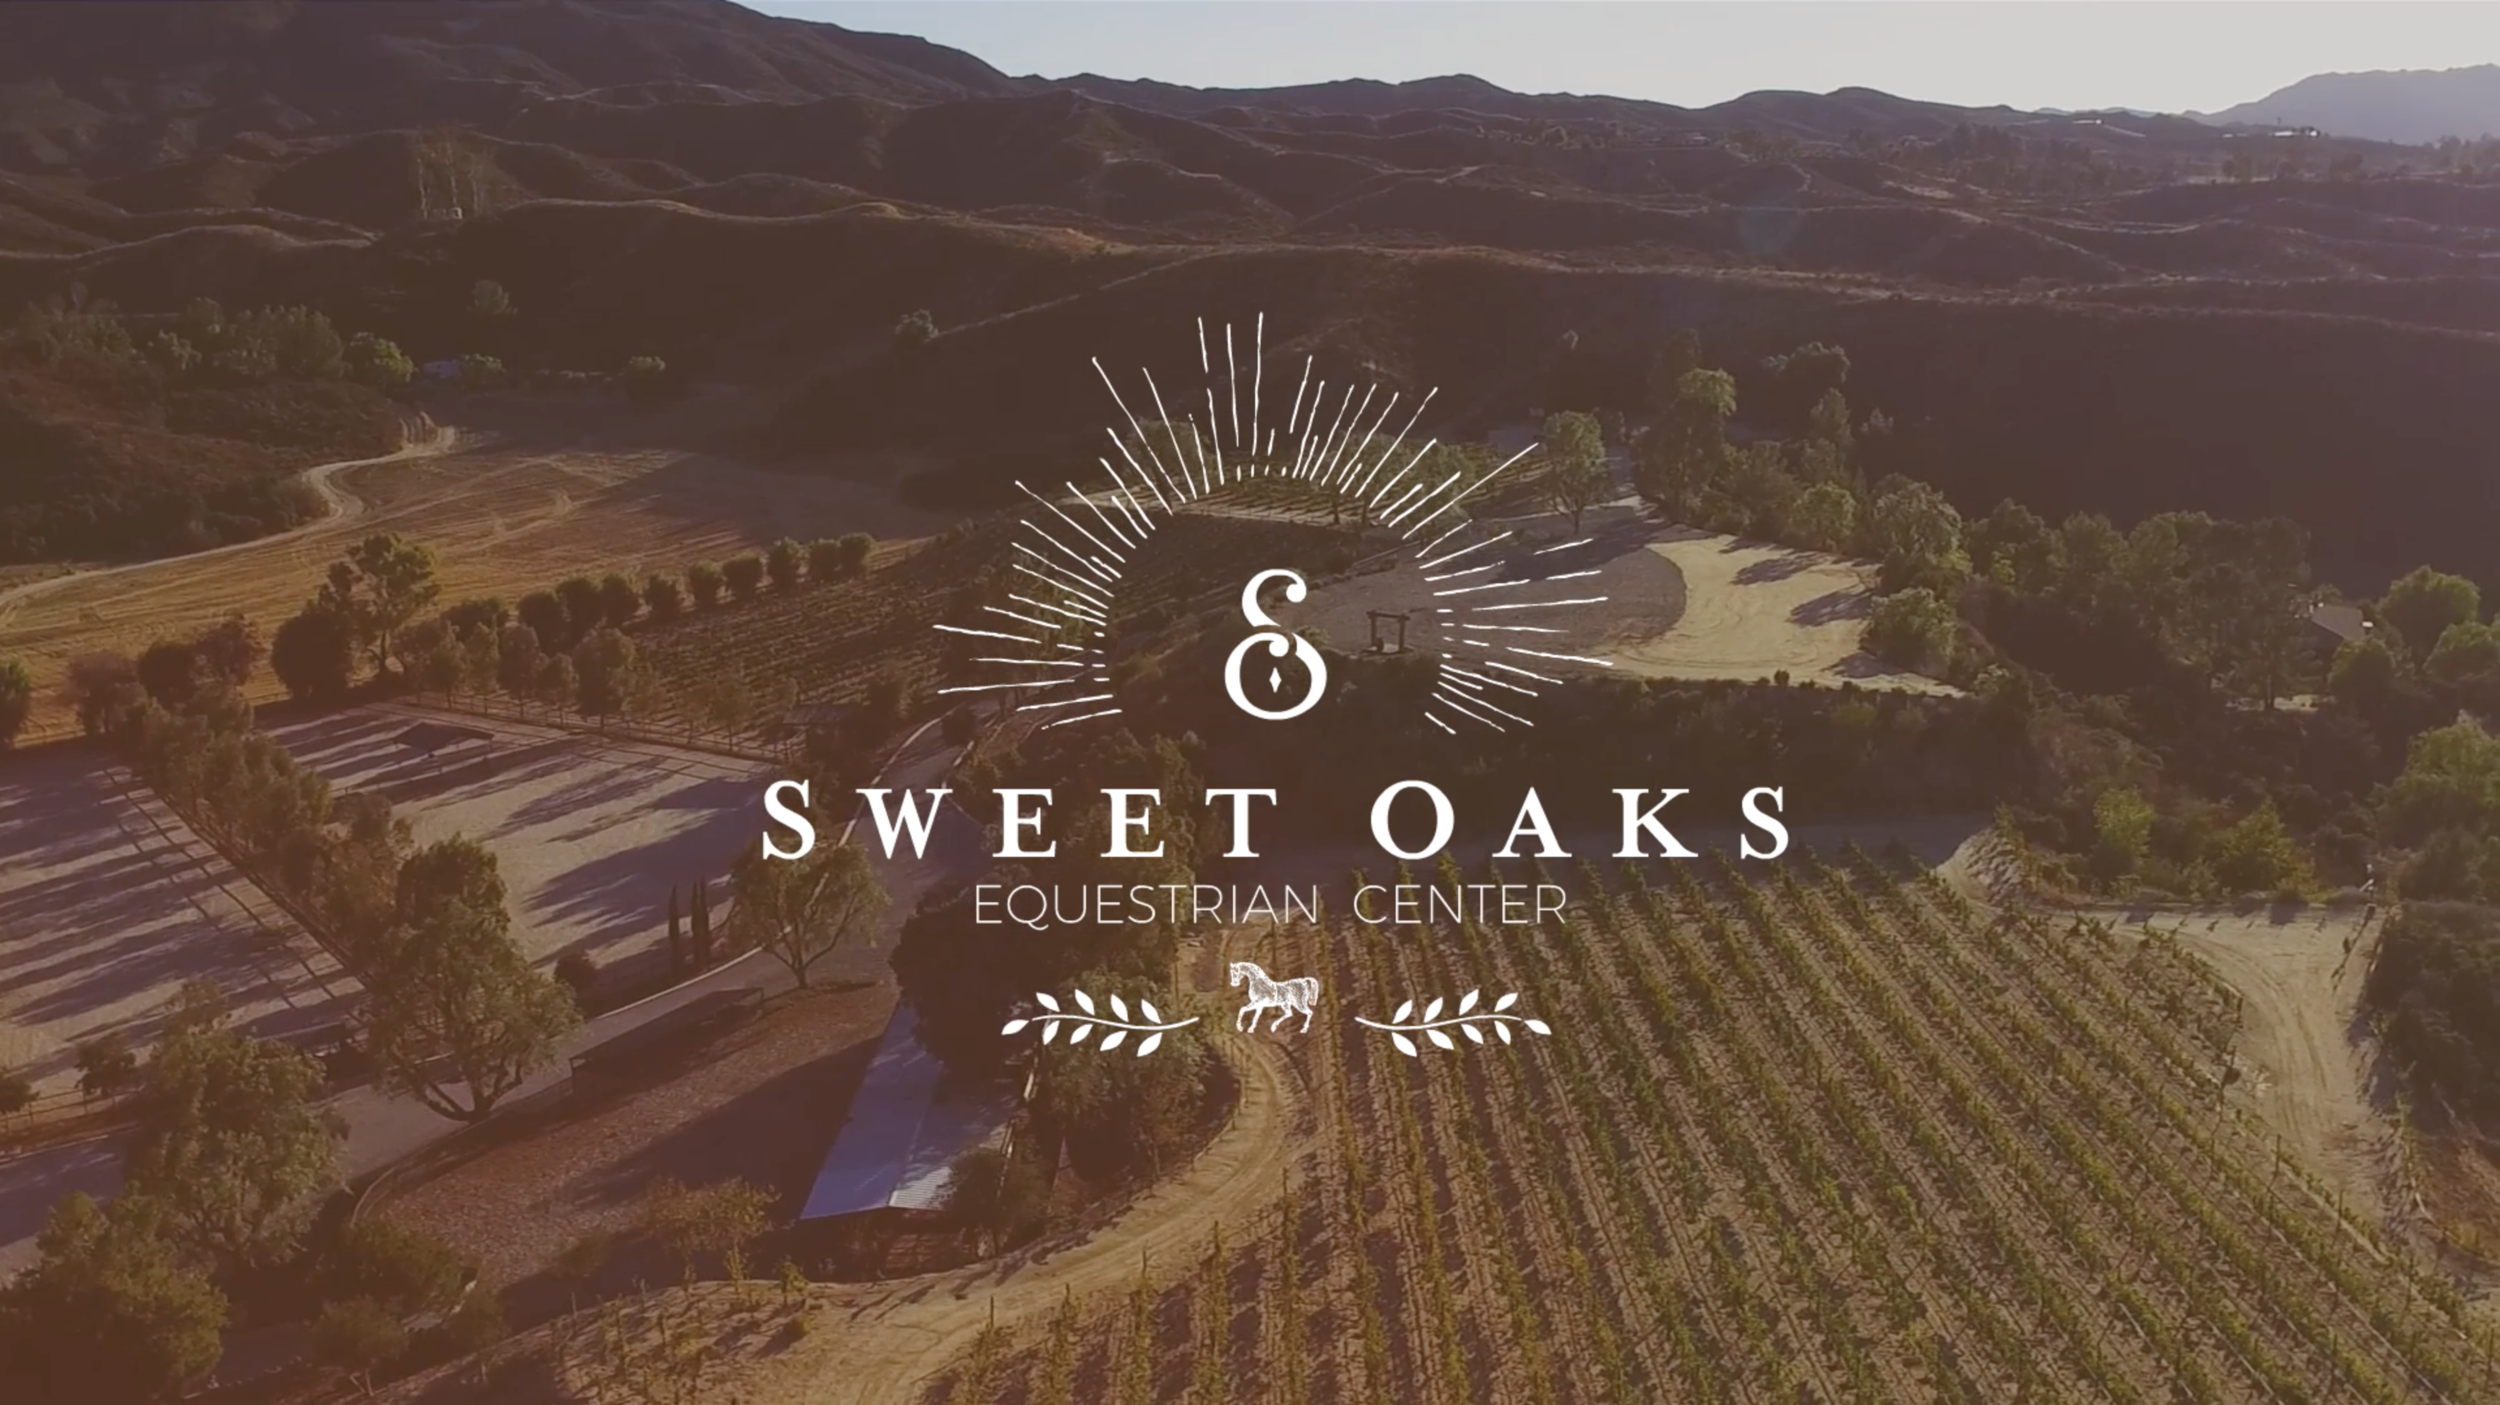 Sweet Oaks Ranch: Meet Sarah 2017